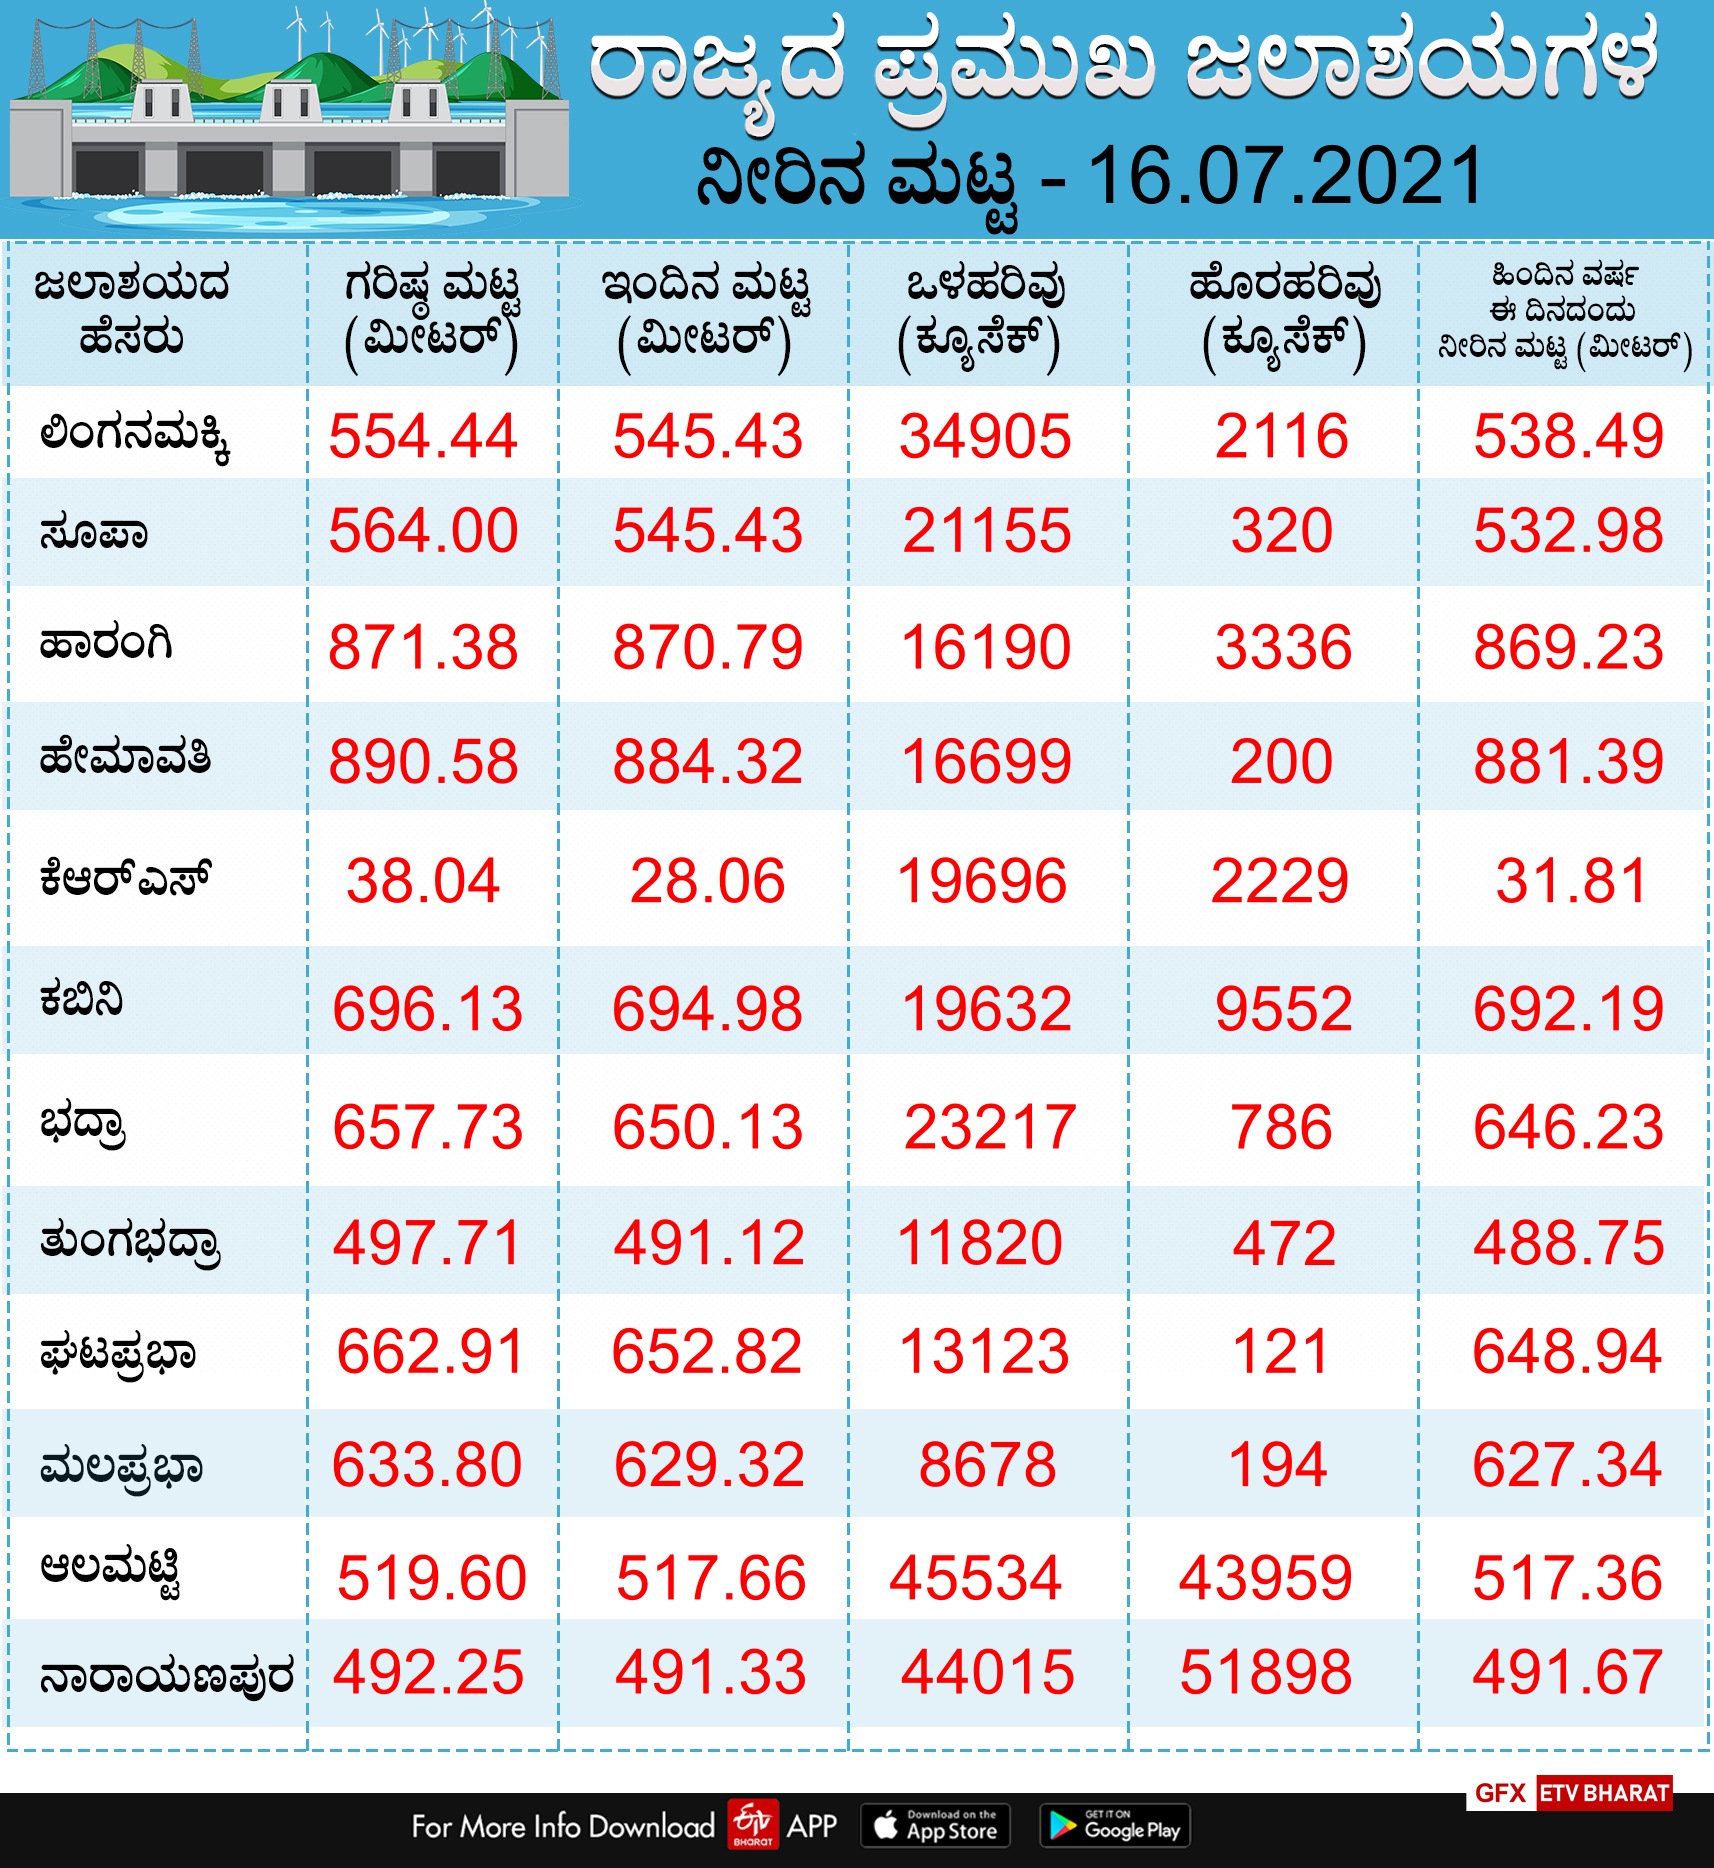 reservoir  water levels of various dams in Karnataka